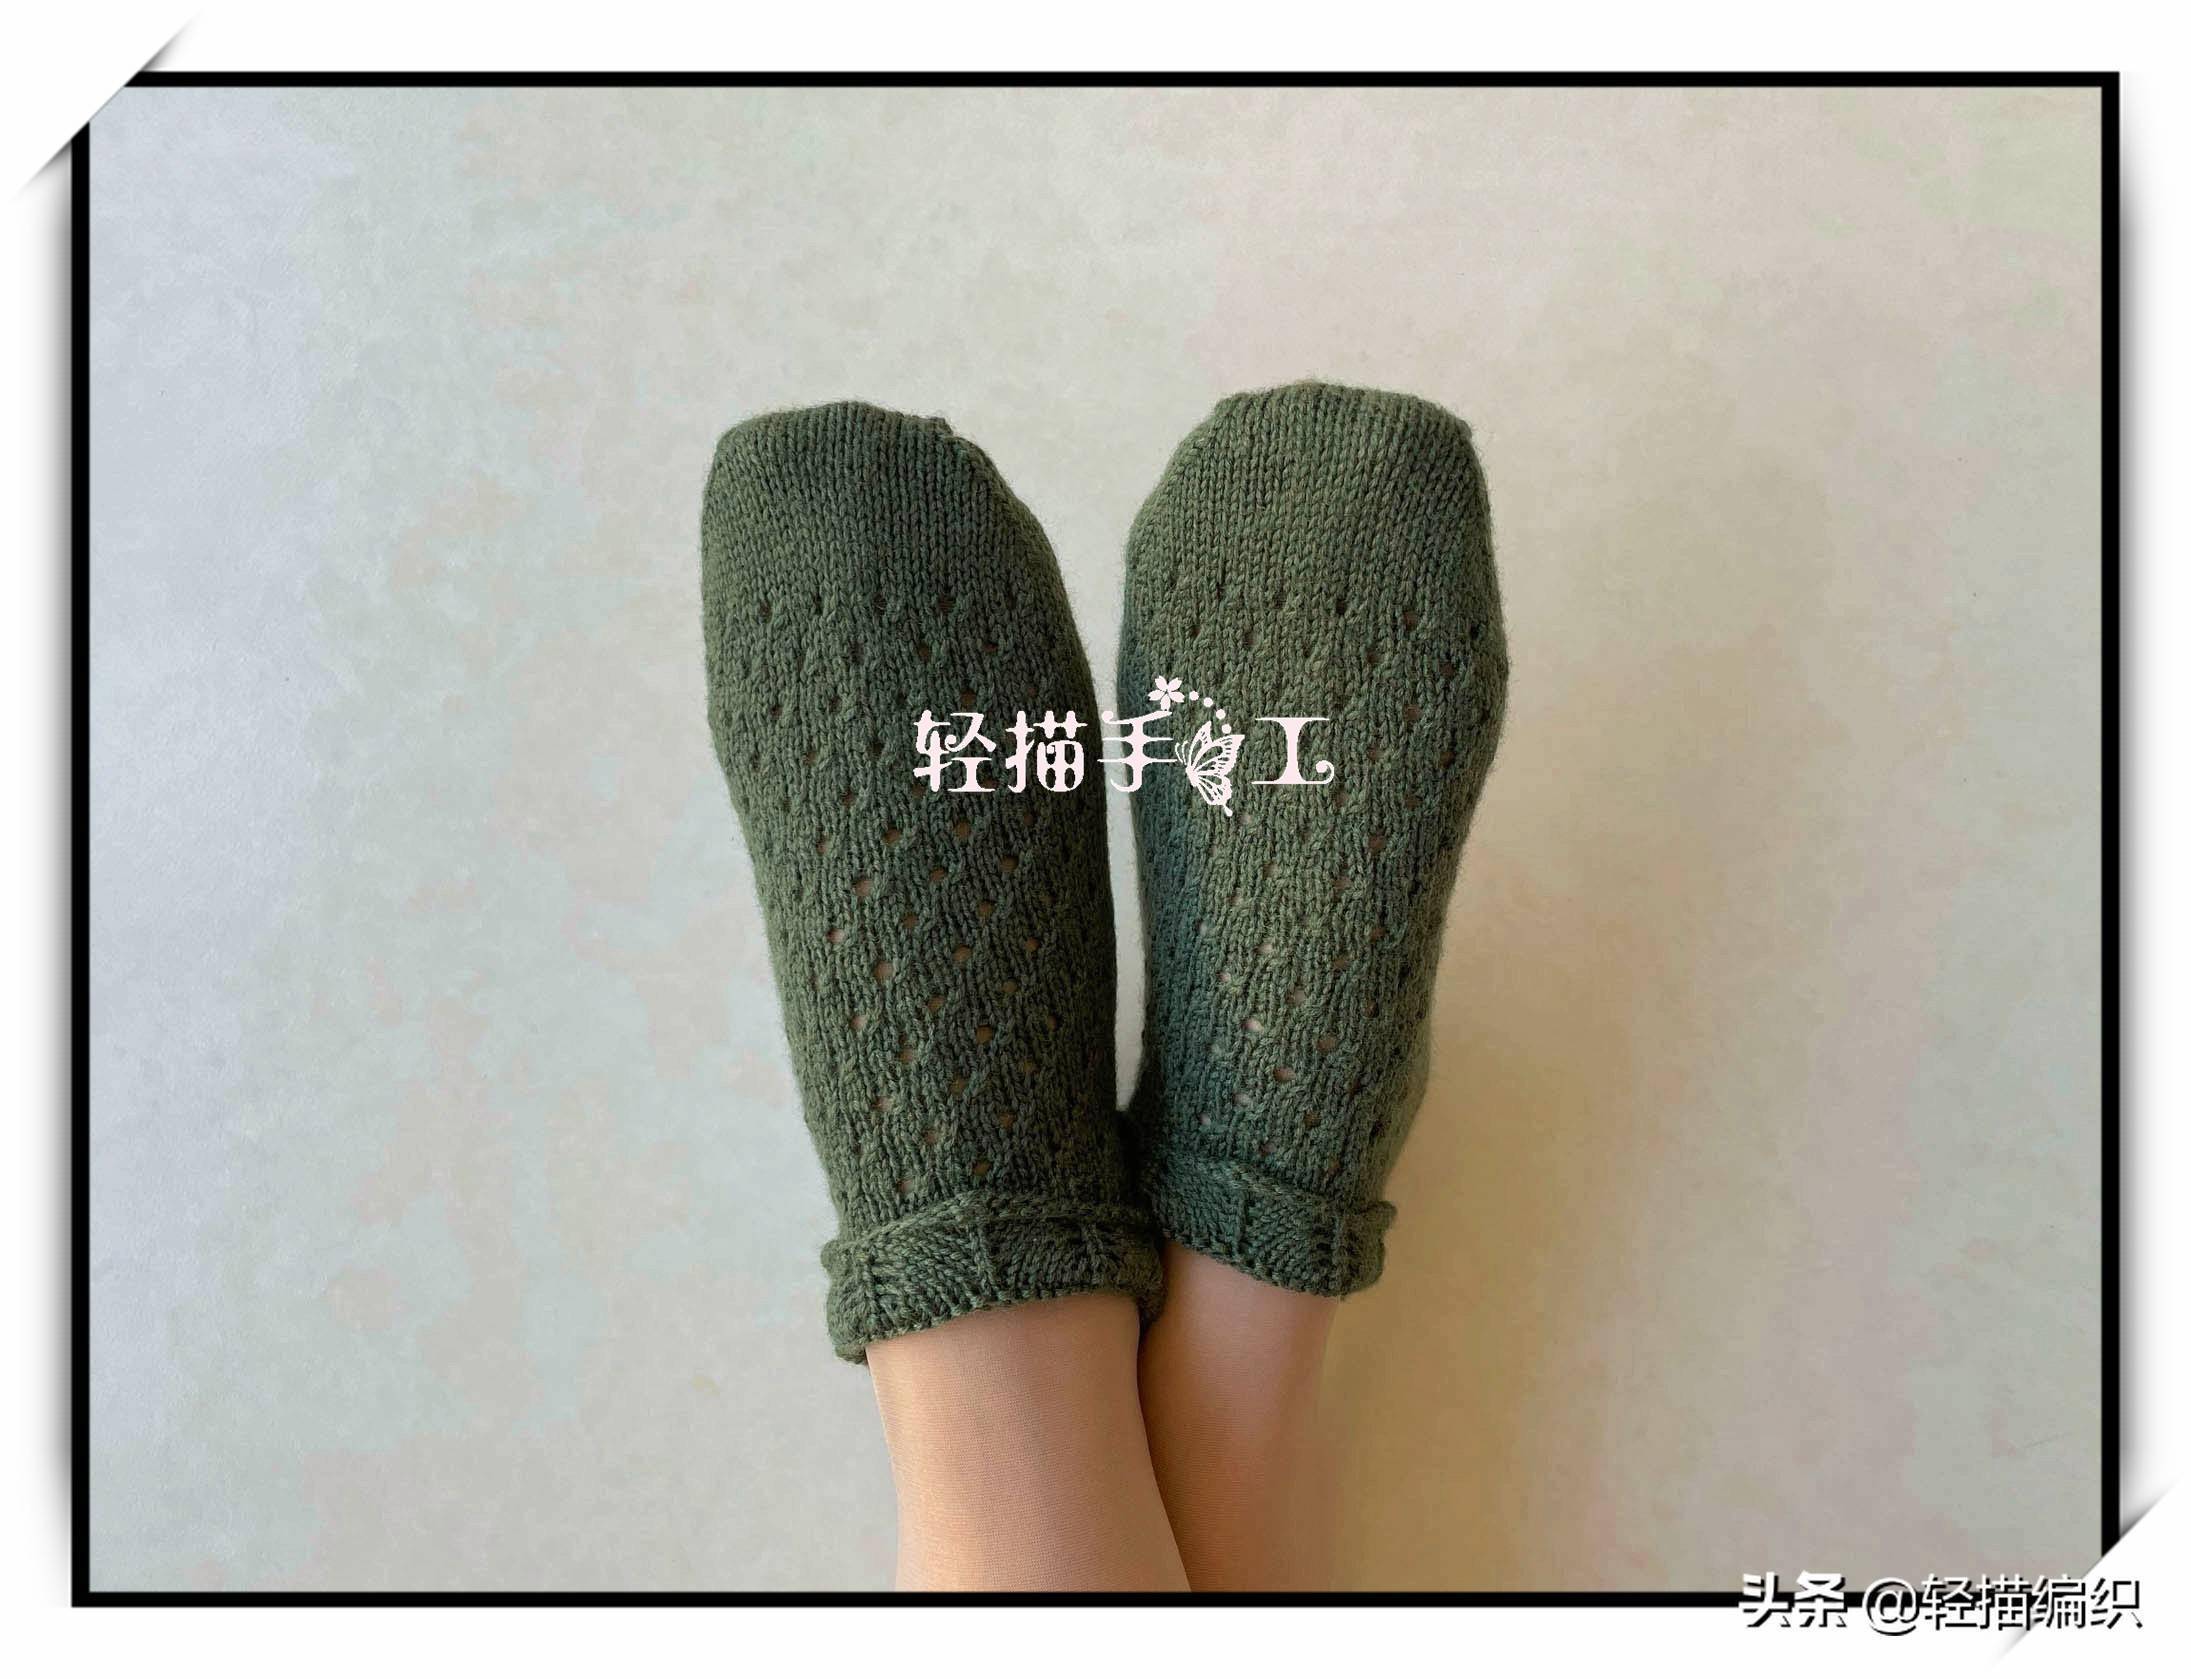 袜子织法简单,从袜口花边起针,花边完成后,翻面织袜口,再织脚后跟和袜